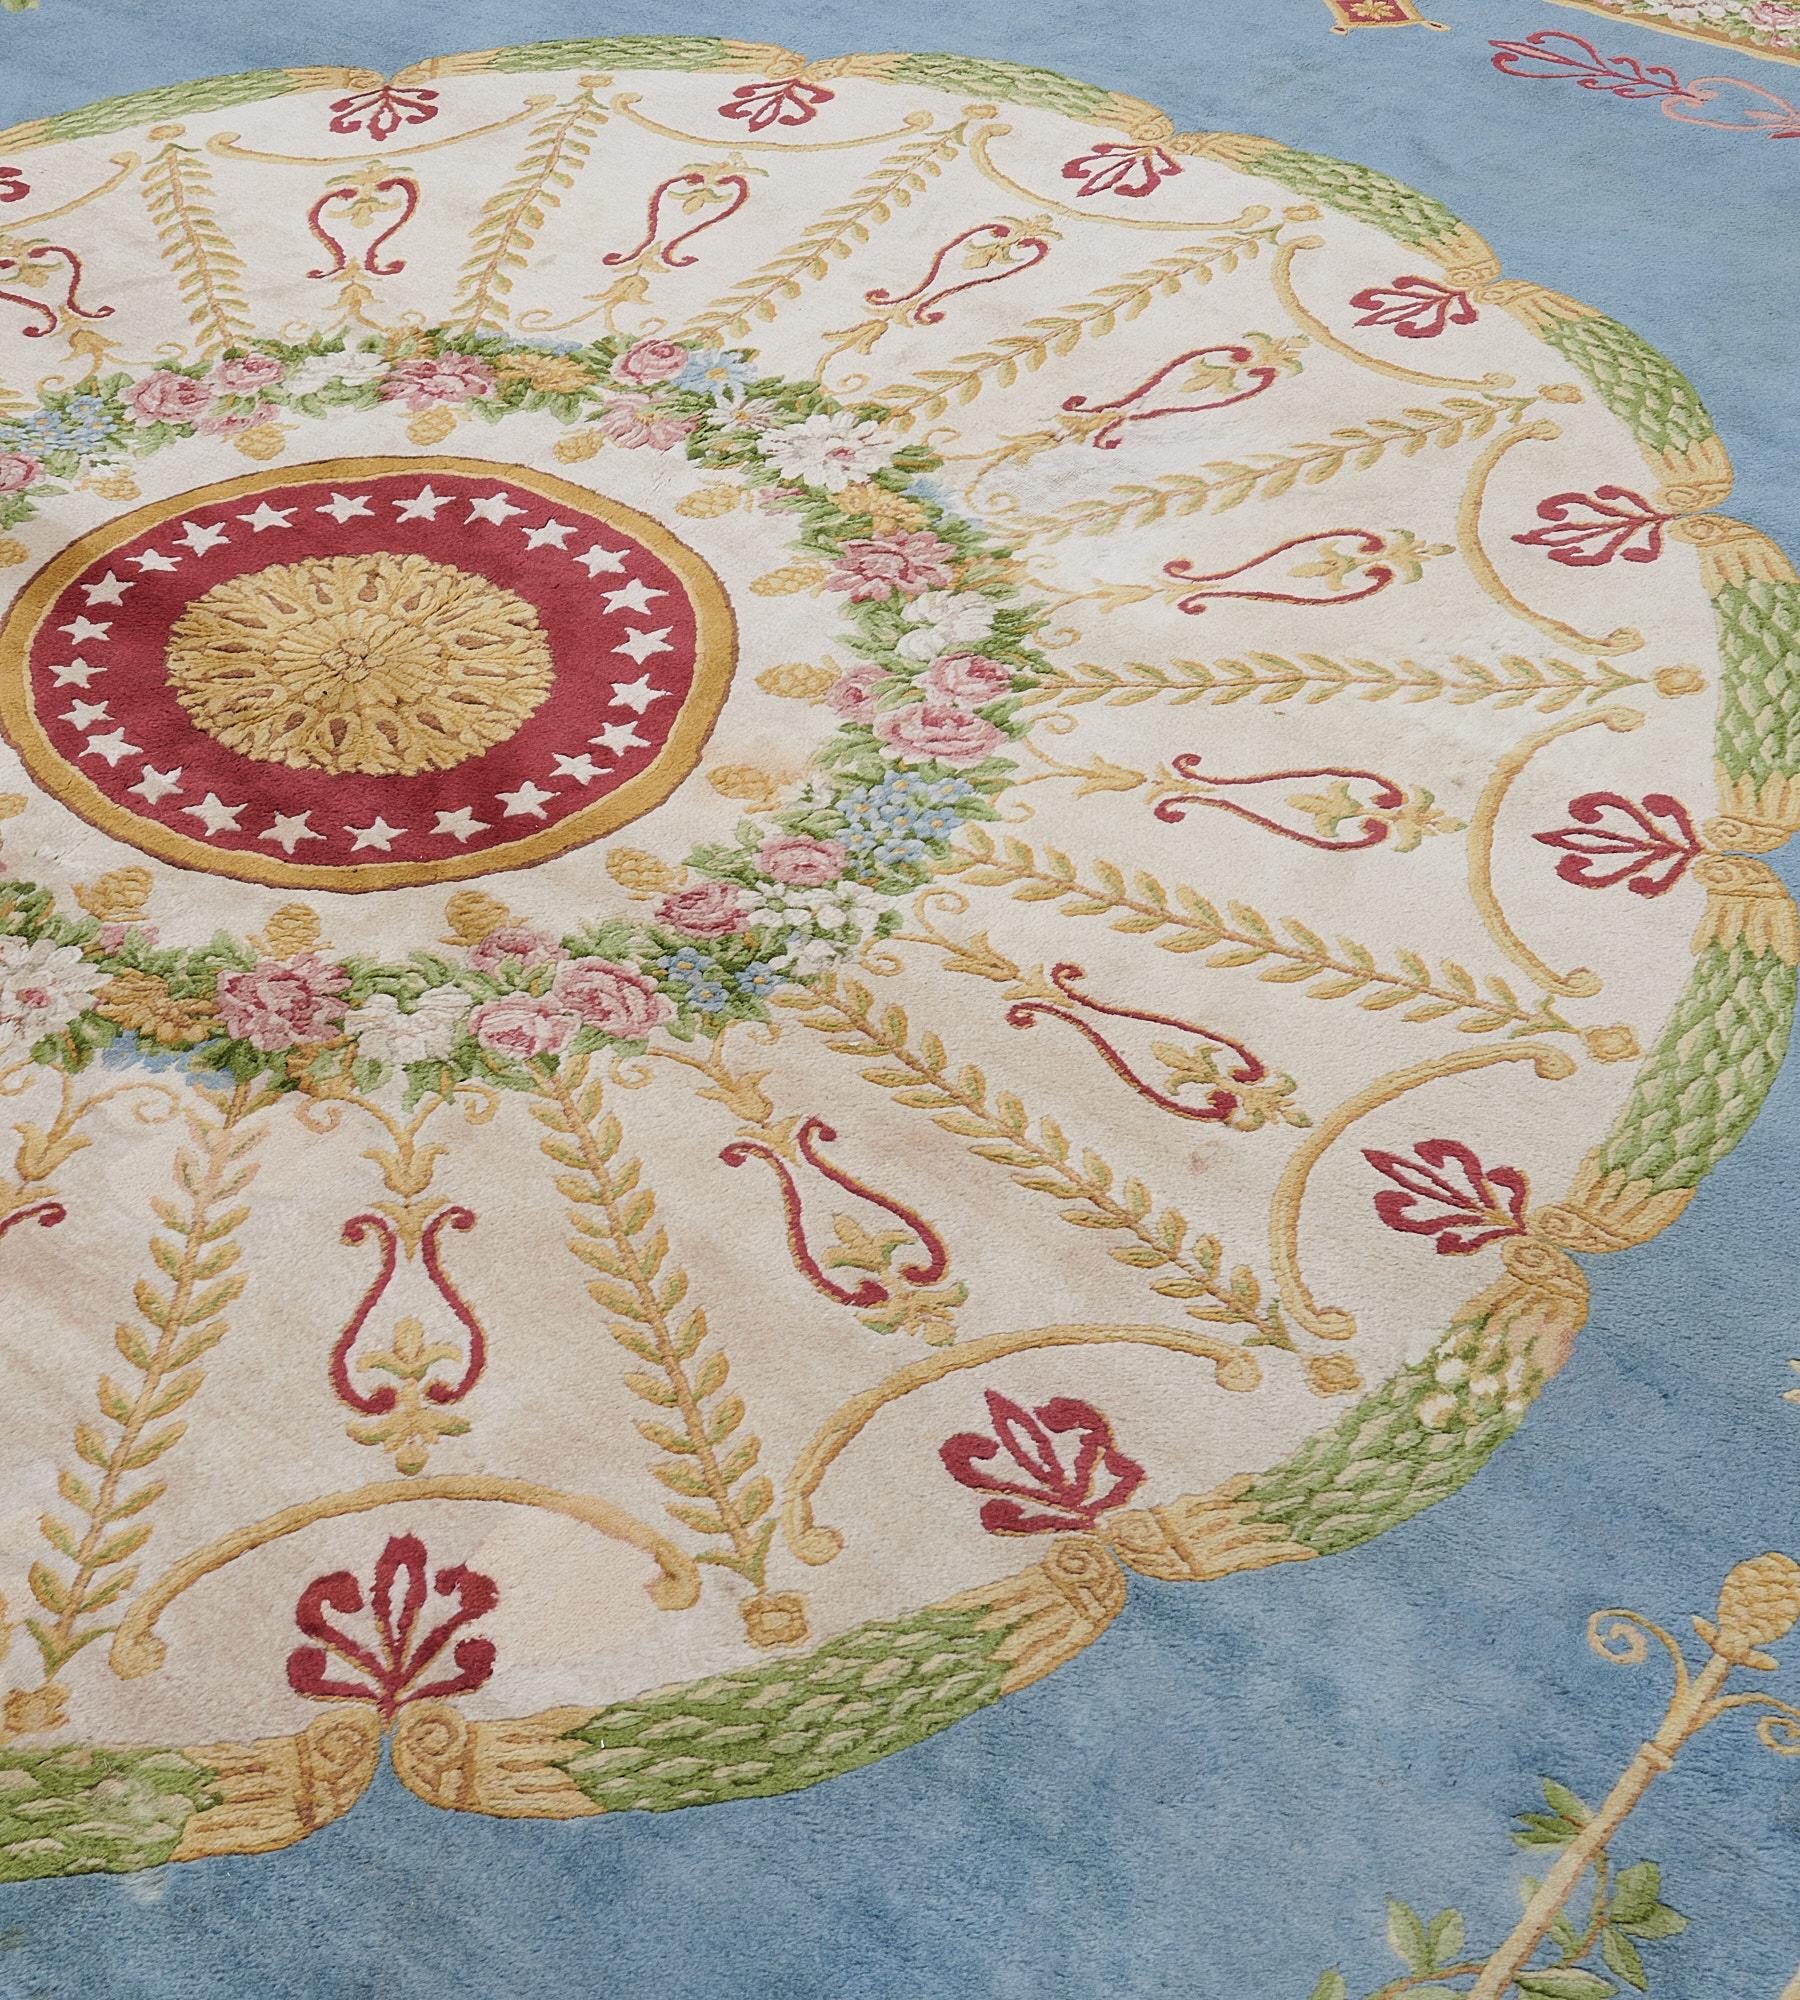 Ce tapis de la Savonnerie a un champ bleu ciel avec un grand rondeau circulaire ivoire et un rondeau central rouge bourgogne avec une feuille d'acanthe dorée au centre, entouré d'une bande d'étoiles ivoire et d'une bande extérieure dorée, entourée